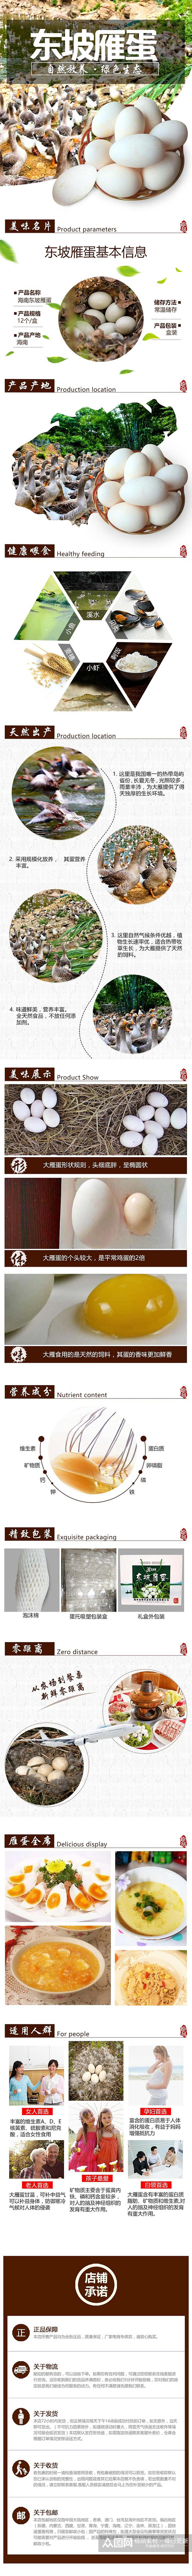 东坡雁蛋鸡蛋特产手机版详情页素材